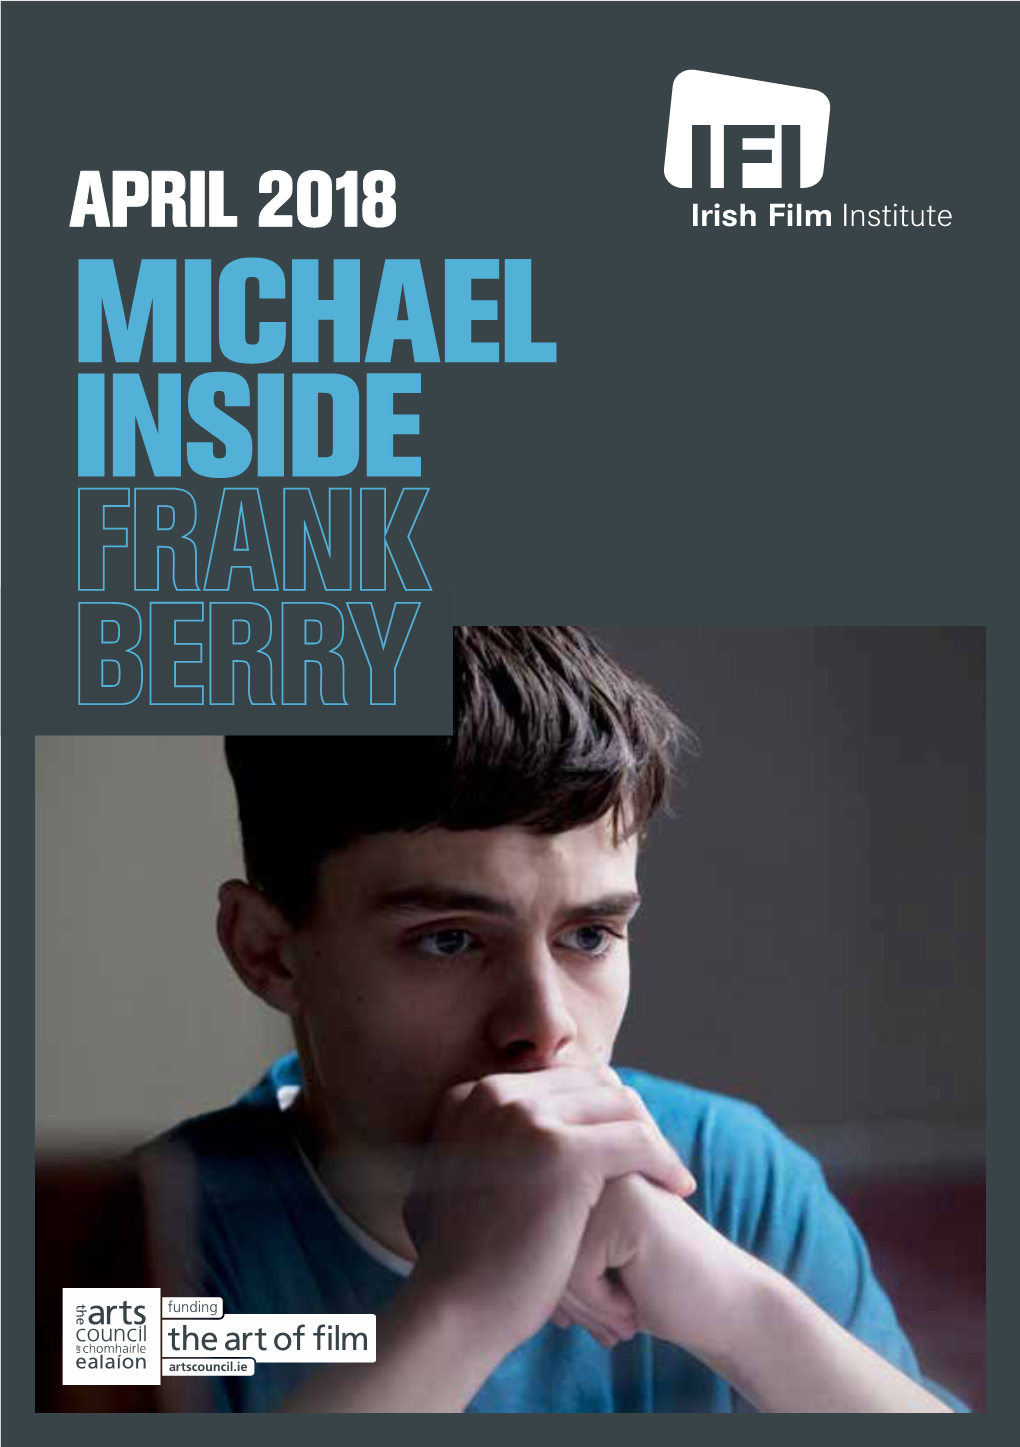 Michael Inside the Irish Film Institute